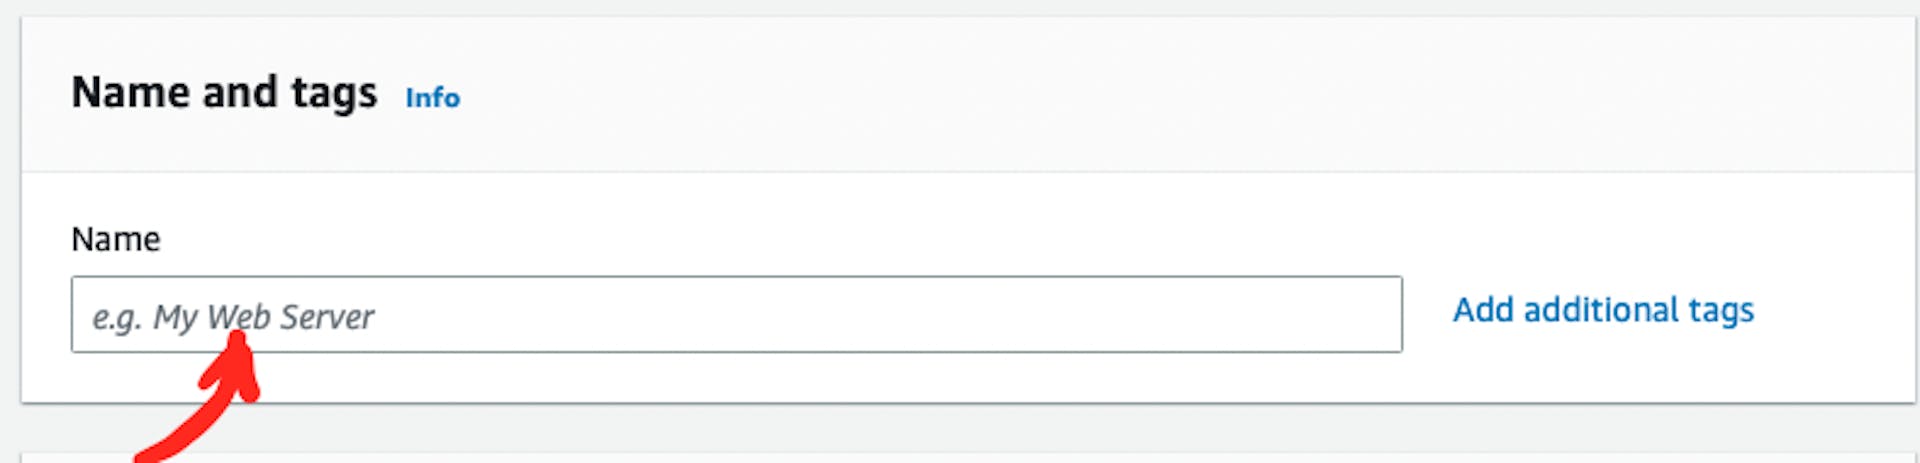 A captura de tela da página da AWS com o ponteiro para a caixa de entrada "Nome" na seção "Nome e tags"